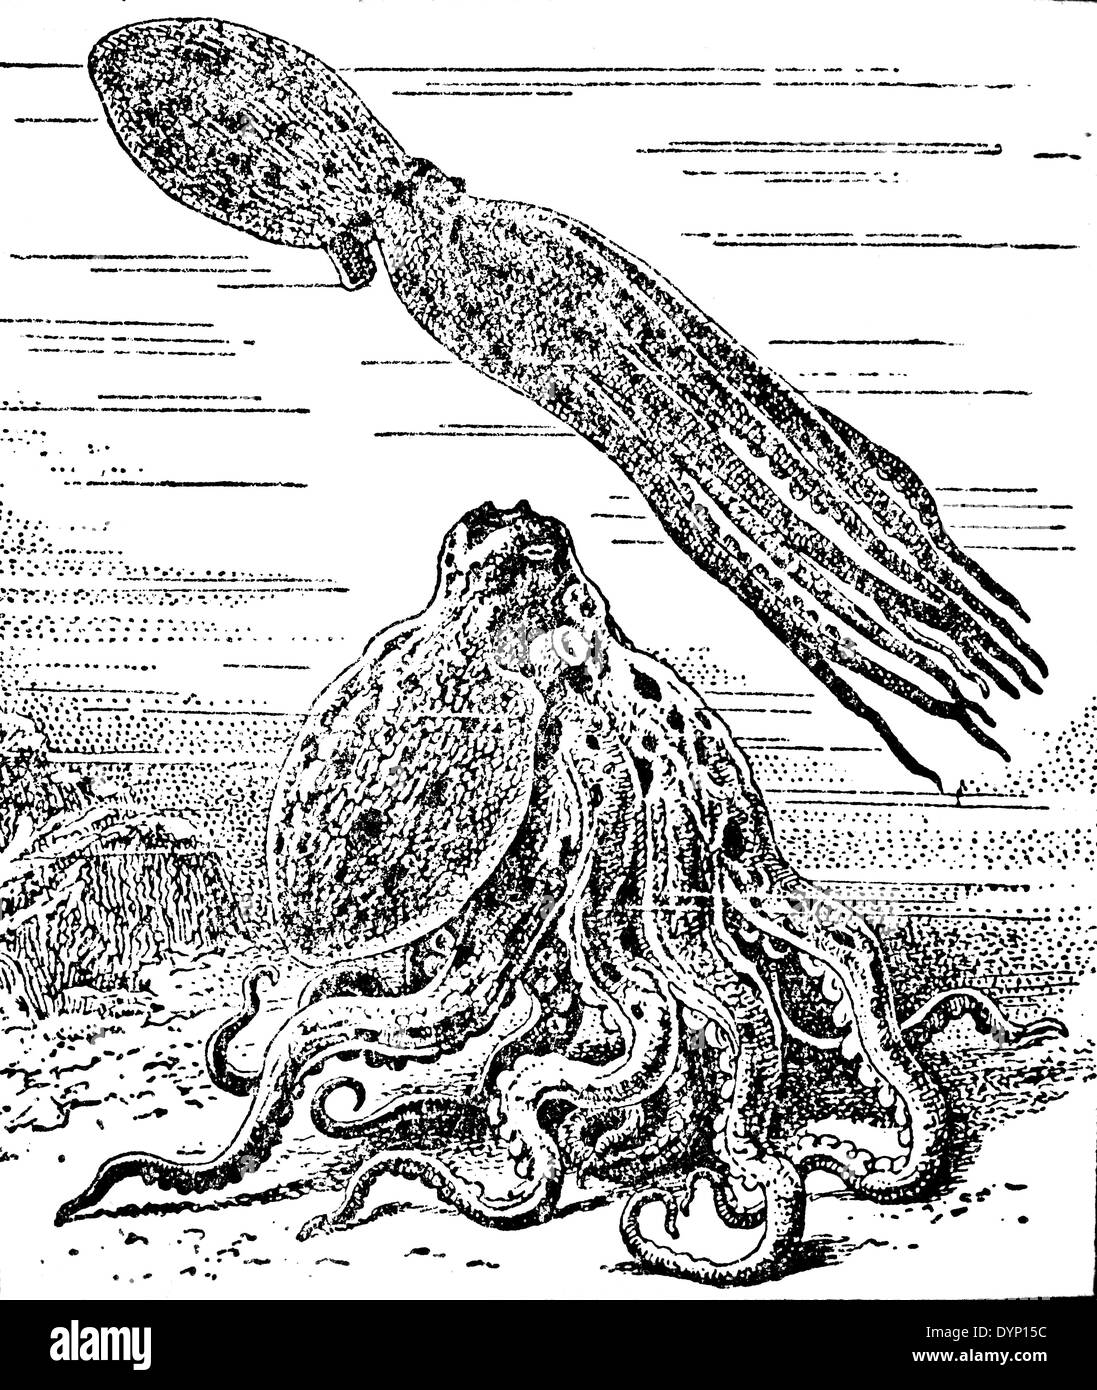 Le poulpe, illustration de l'Encyclopédie Soviétique, 1929 Banque D'Images